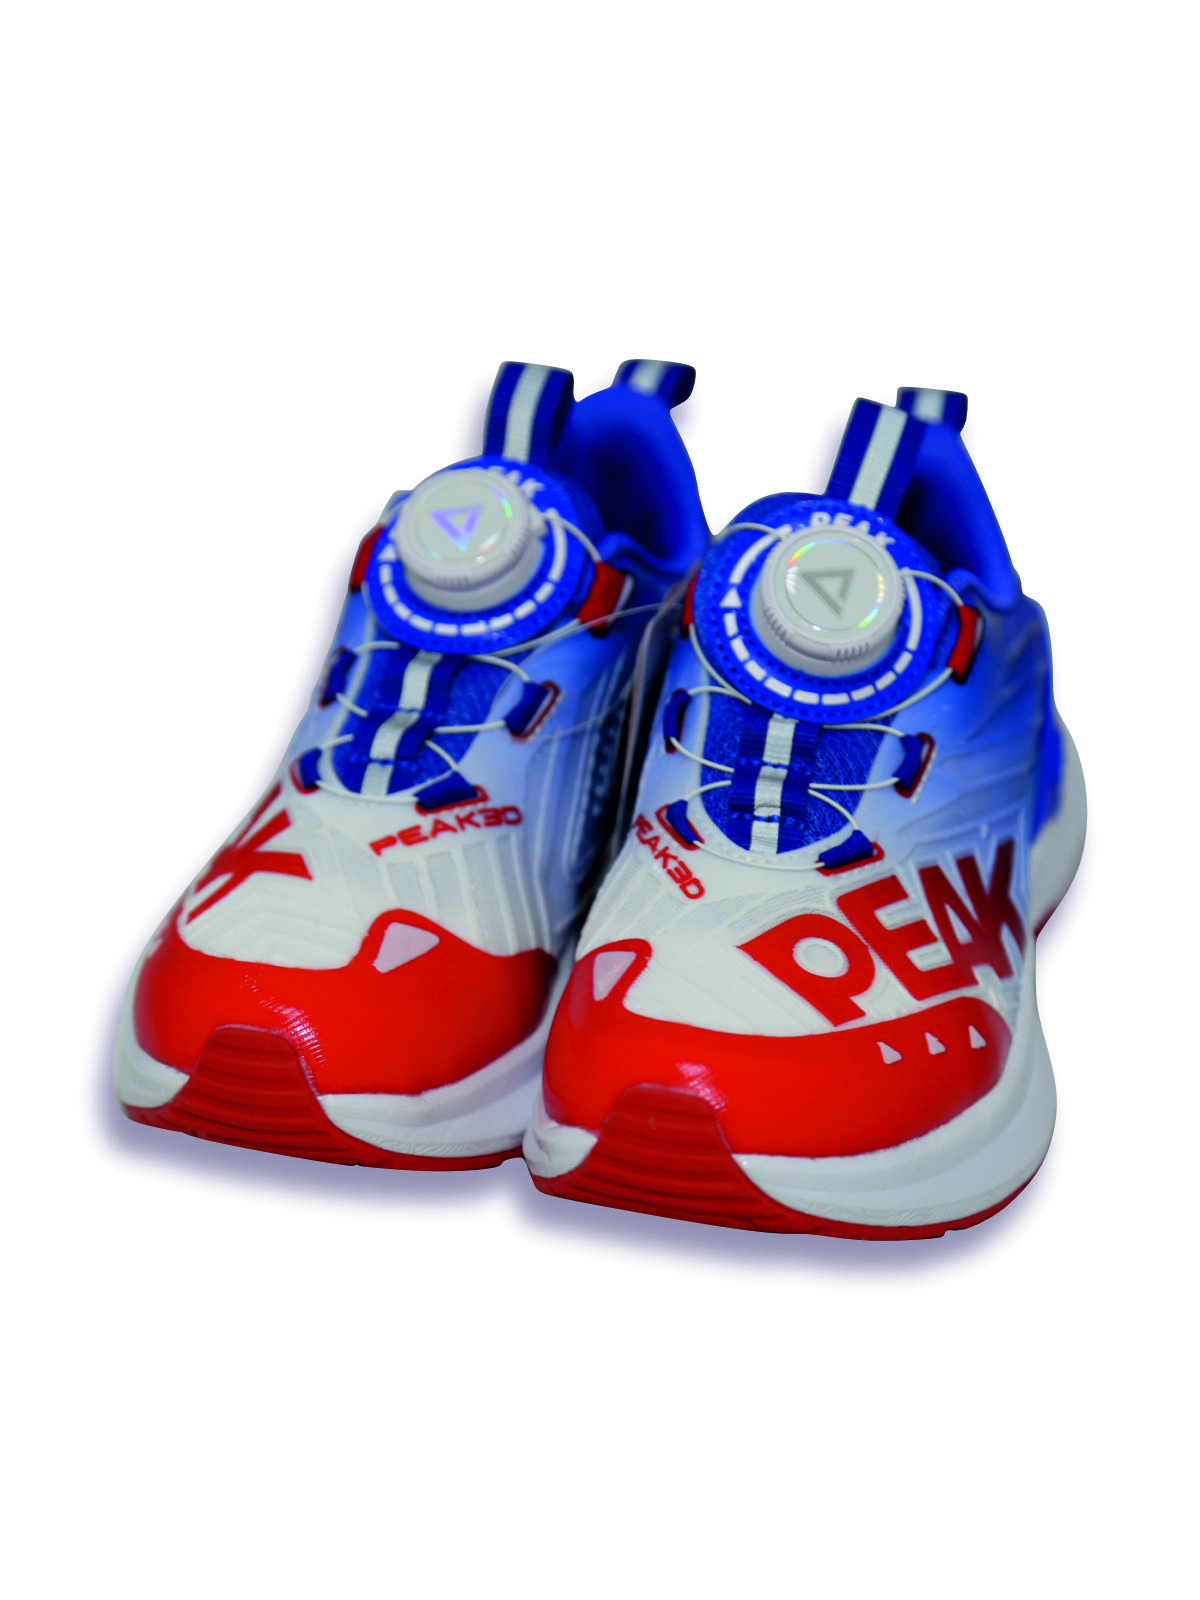 Кроссовки детские PEAK E23, красно-сине-белый, 35 кроссовки детские peak e23 красно сине белый 38